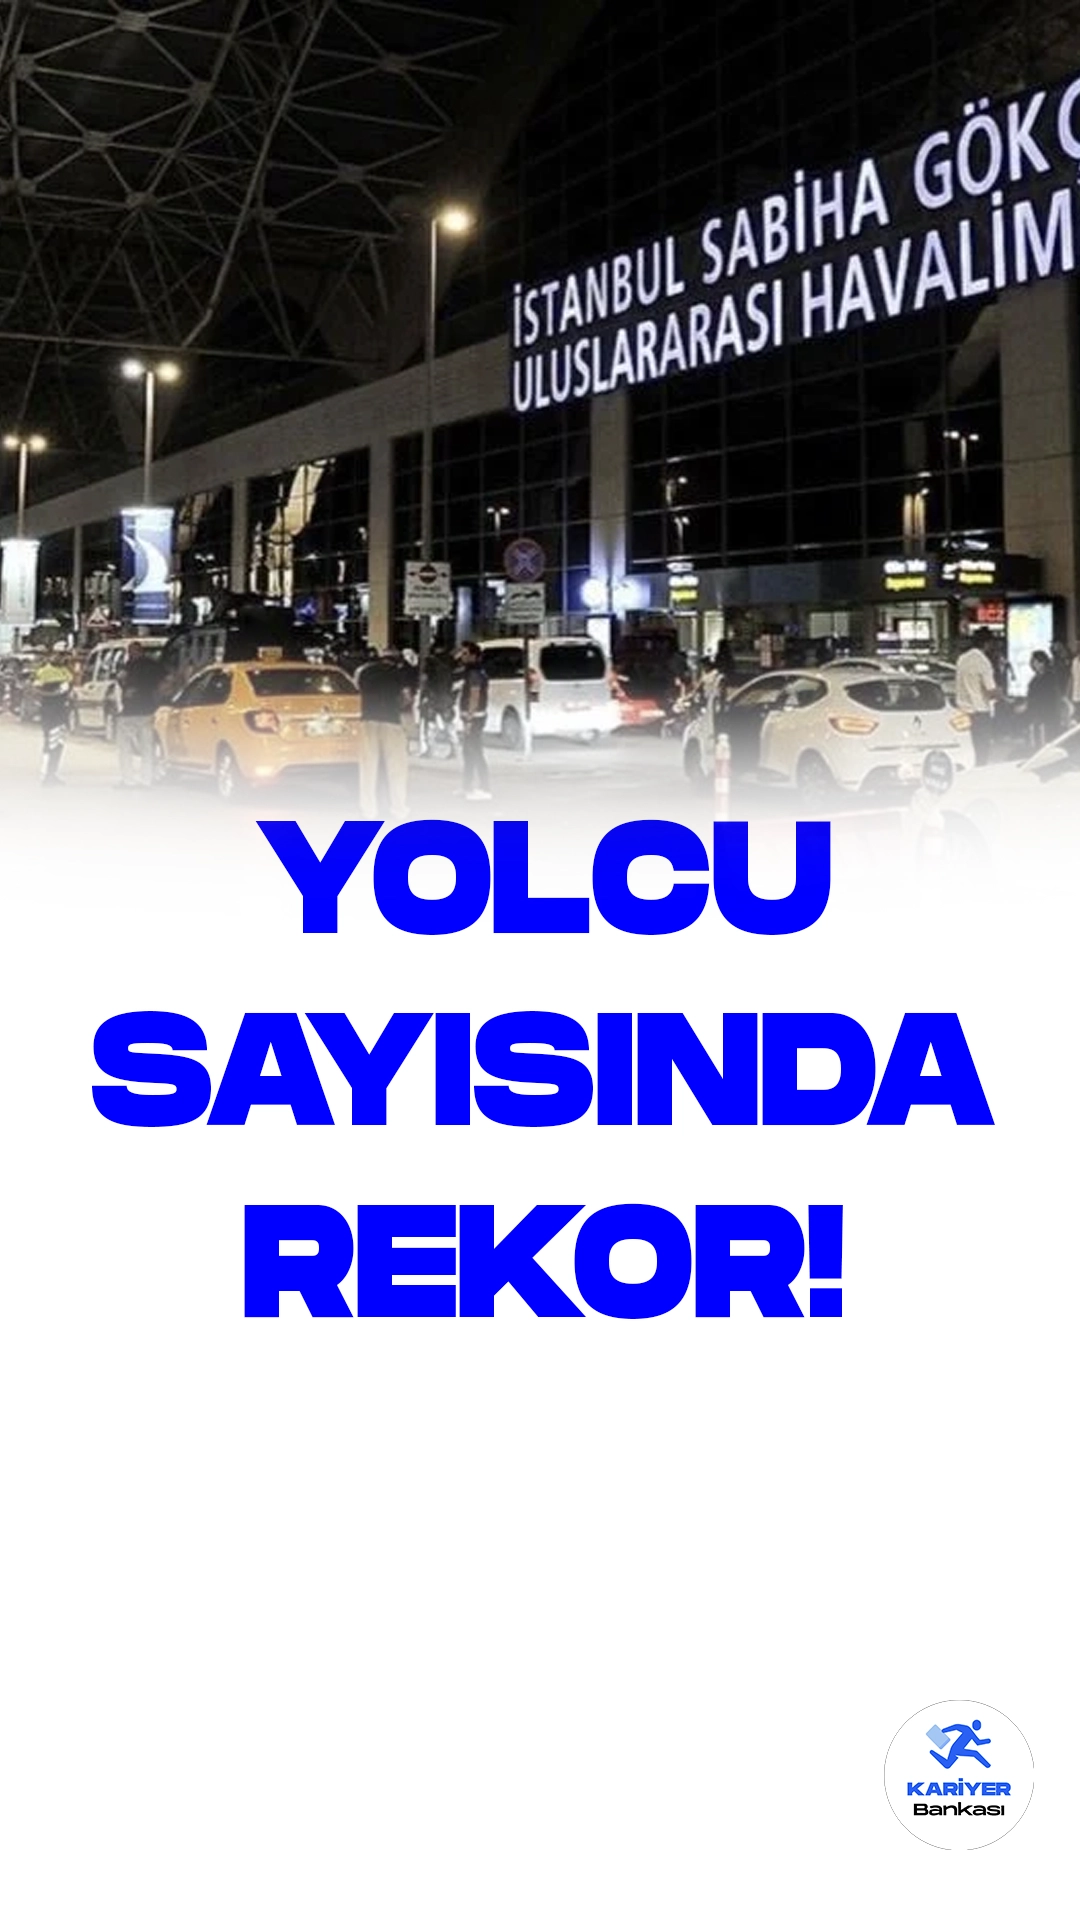 Sabiha Gökçen Yolcu Sayısında Rekor Kırdı.İstanbul Sabiha Gökçen Havalimanı, ağustosun ilk hafta sonunda muazzam bir başarıya imza attı ve rekor bir yolcu sayısına ulaştı.